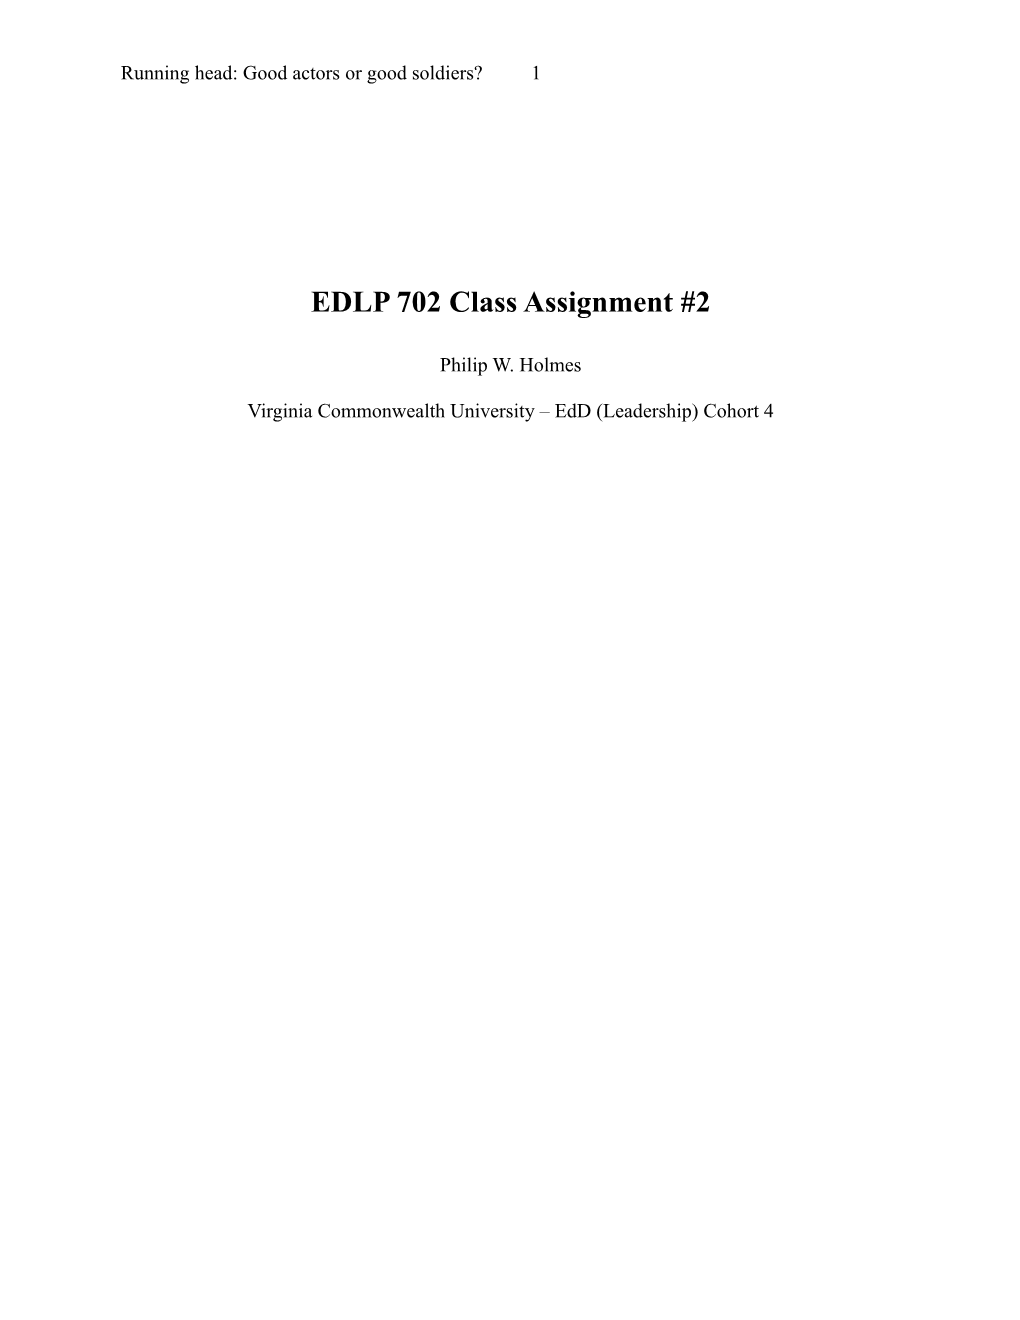 EDLP 702 Class Assignment #2